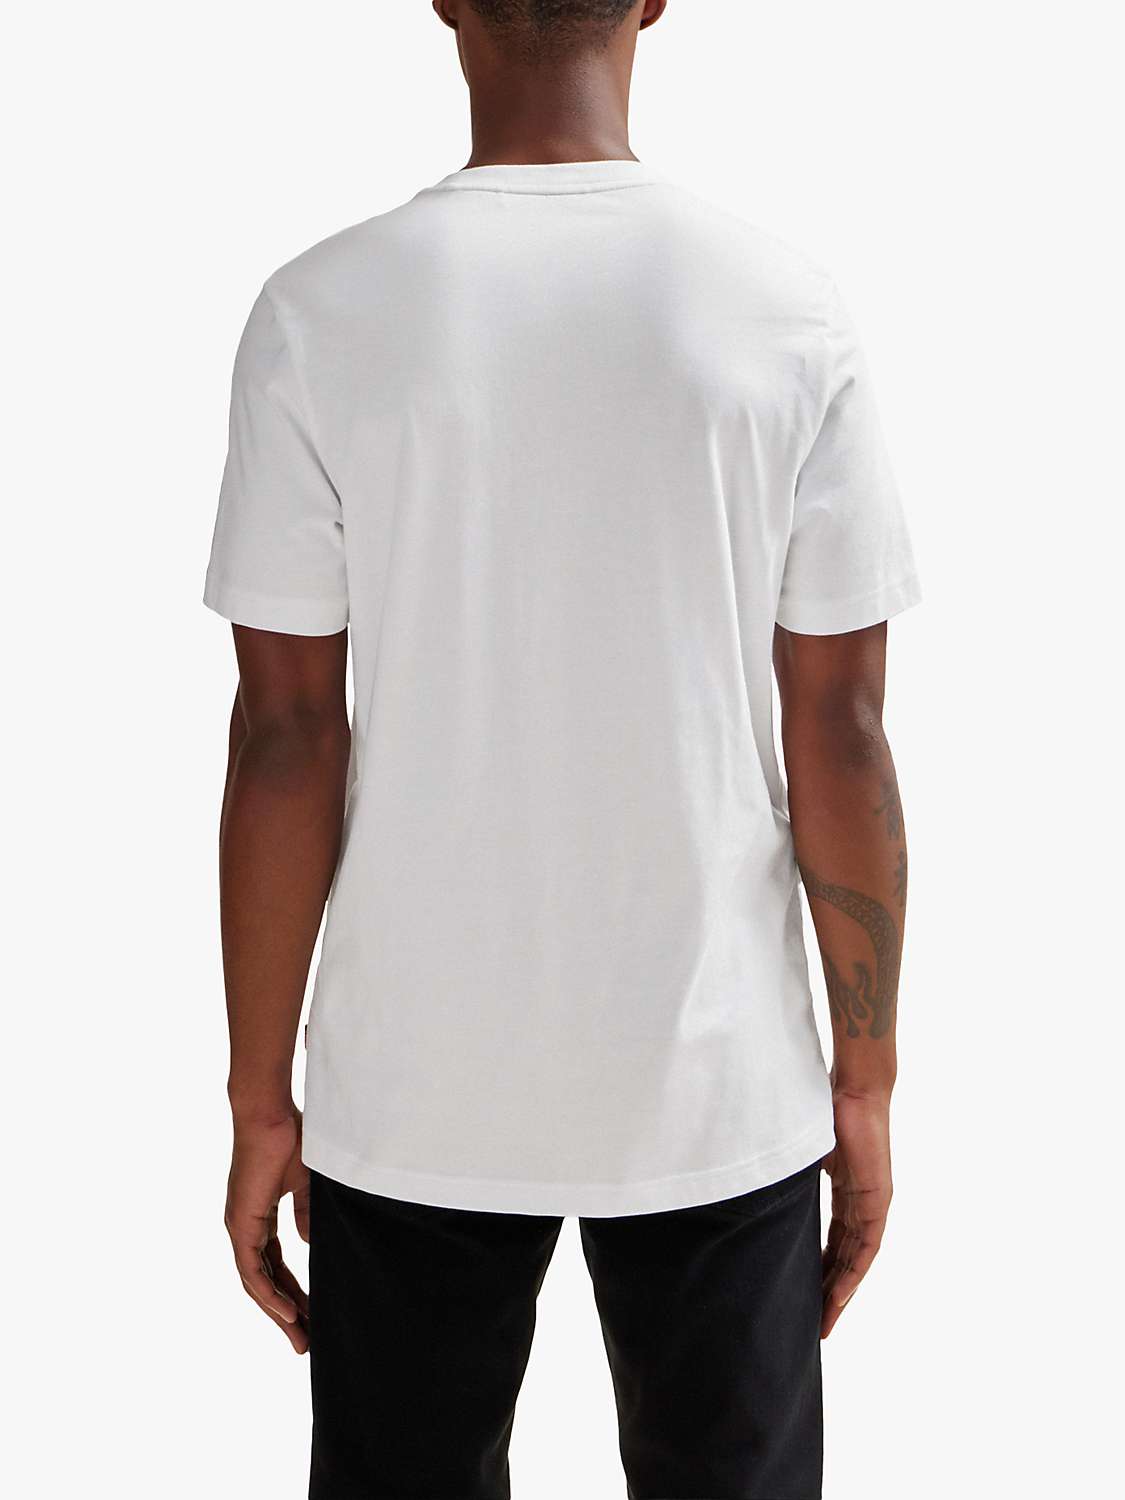 Buy BOSS Tartan Logo Cotton T-Shirt, White/Mutli Online at johnlewis.com